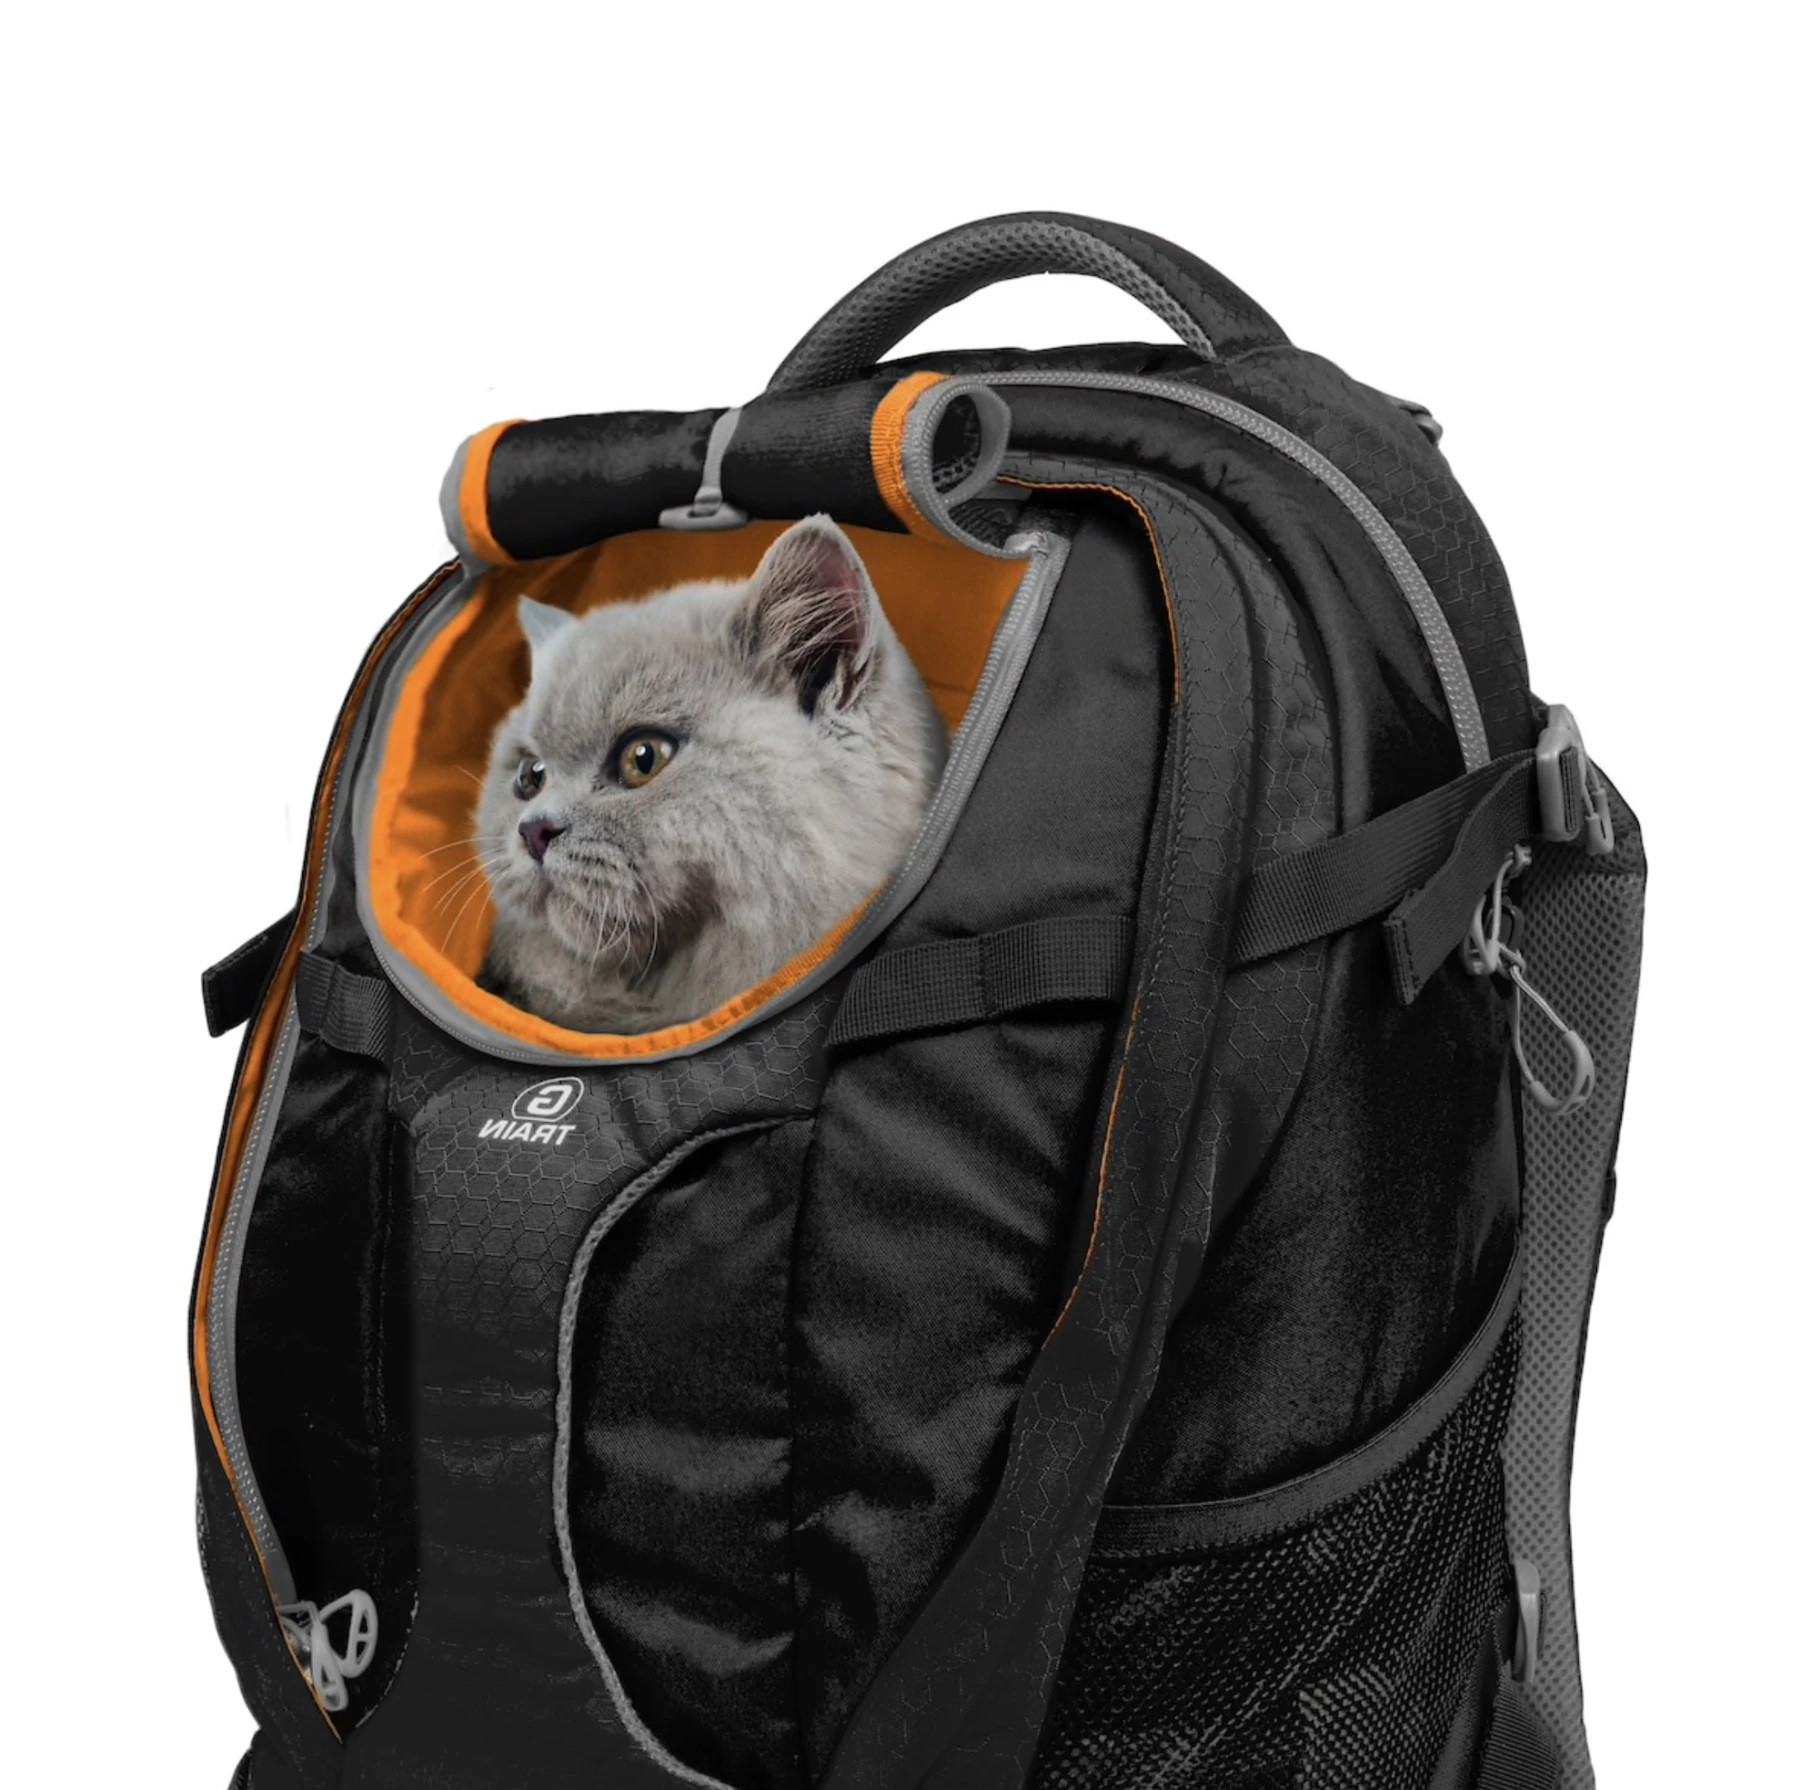 Kurgo G-Train Dog Carrier Backpack - Black